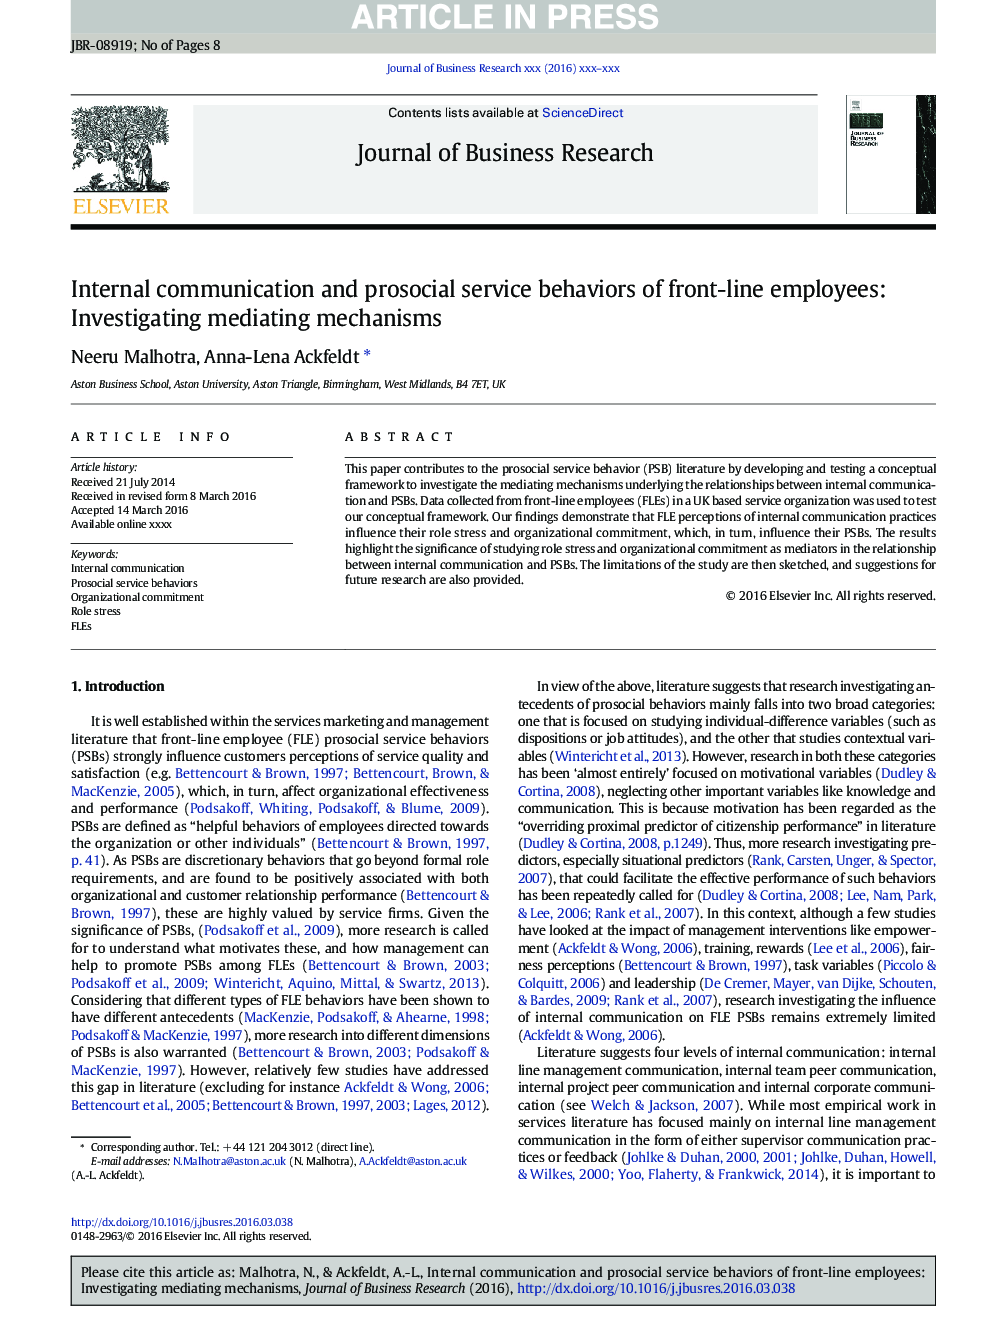 ارتباطات داخلی و رفتارهای خدمات پس از کارکنان خط مقدم: بررسی مکانیزم های واسطه 